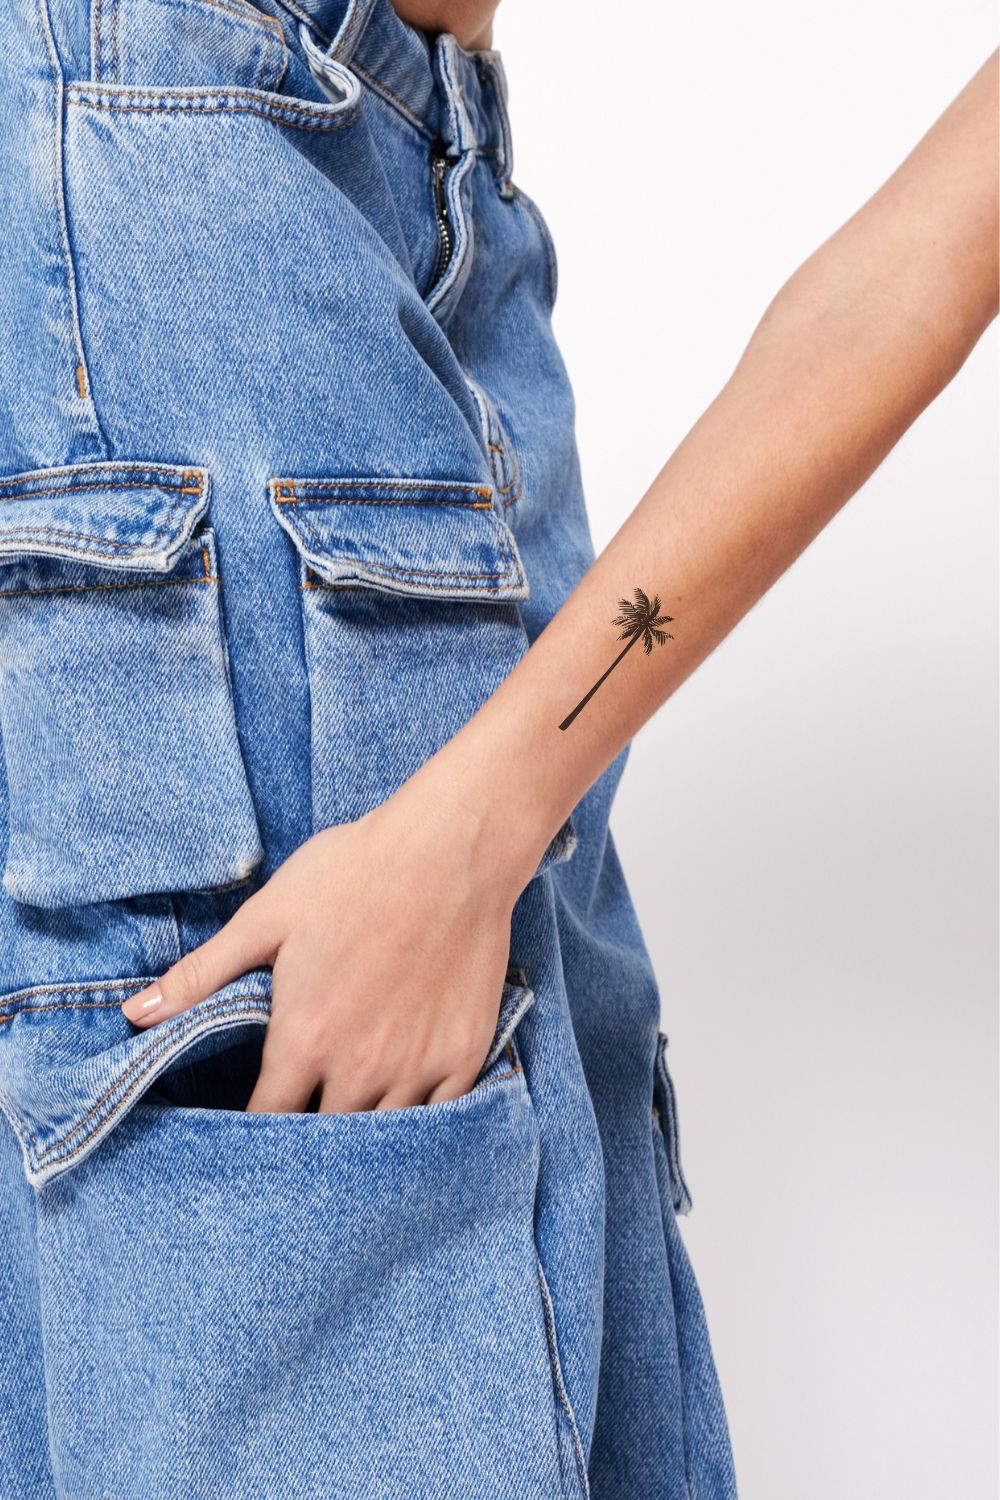 Palm Tree Semi-Permanent Tattoo